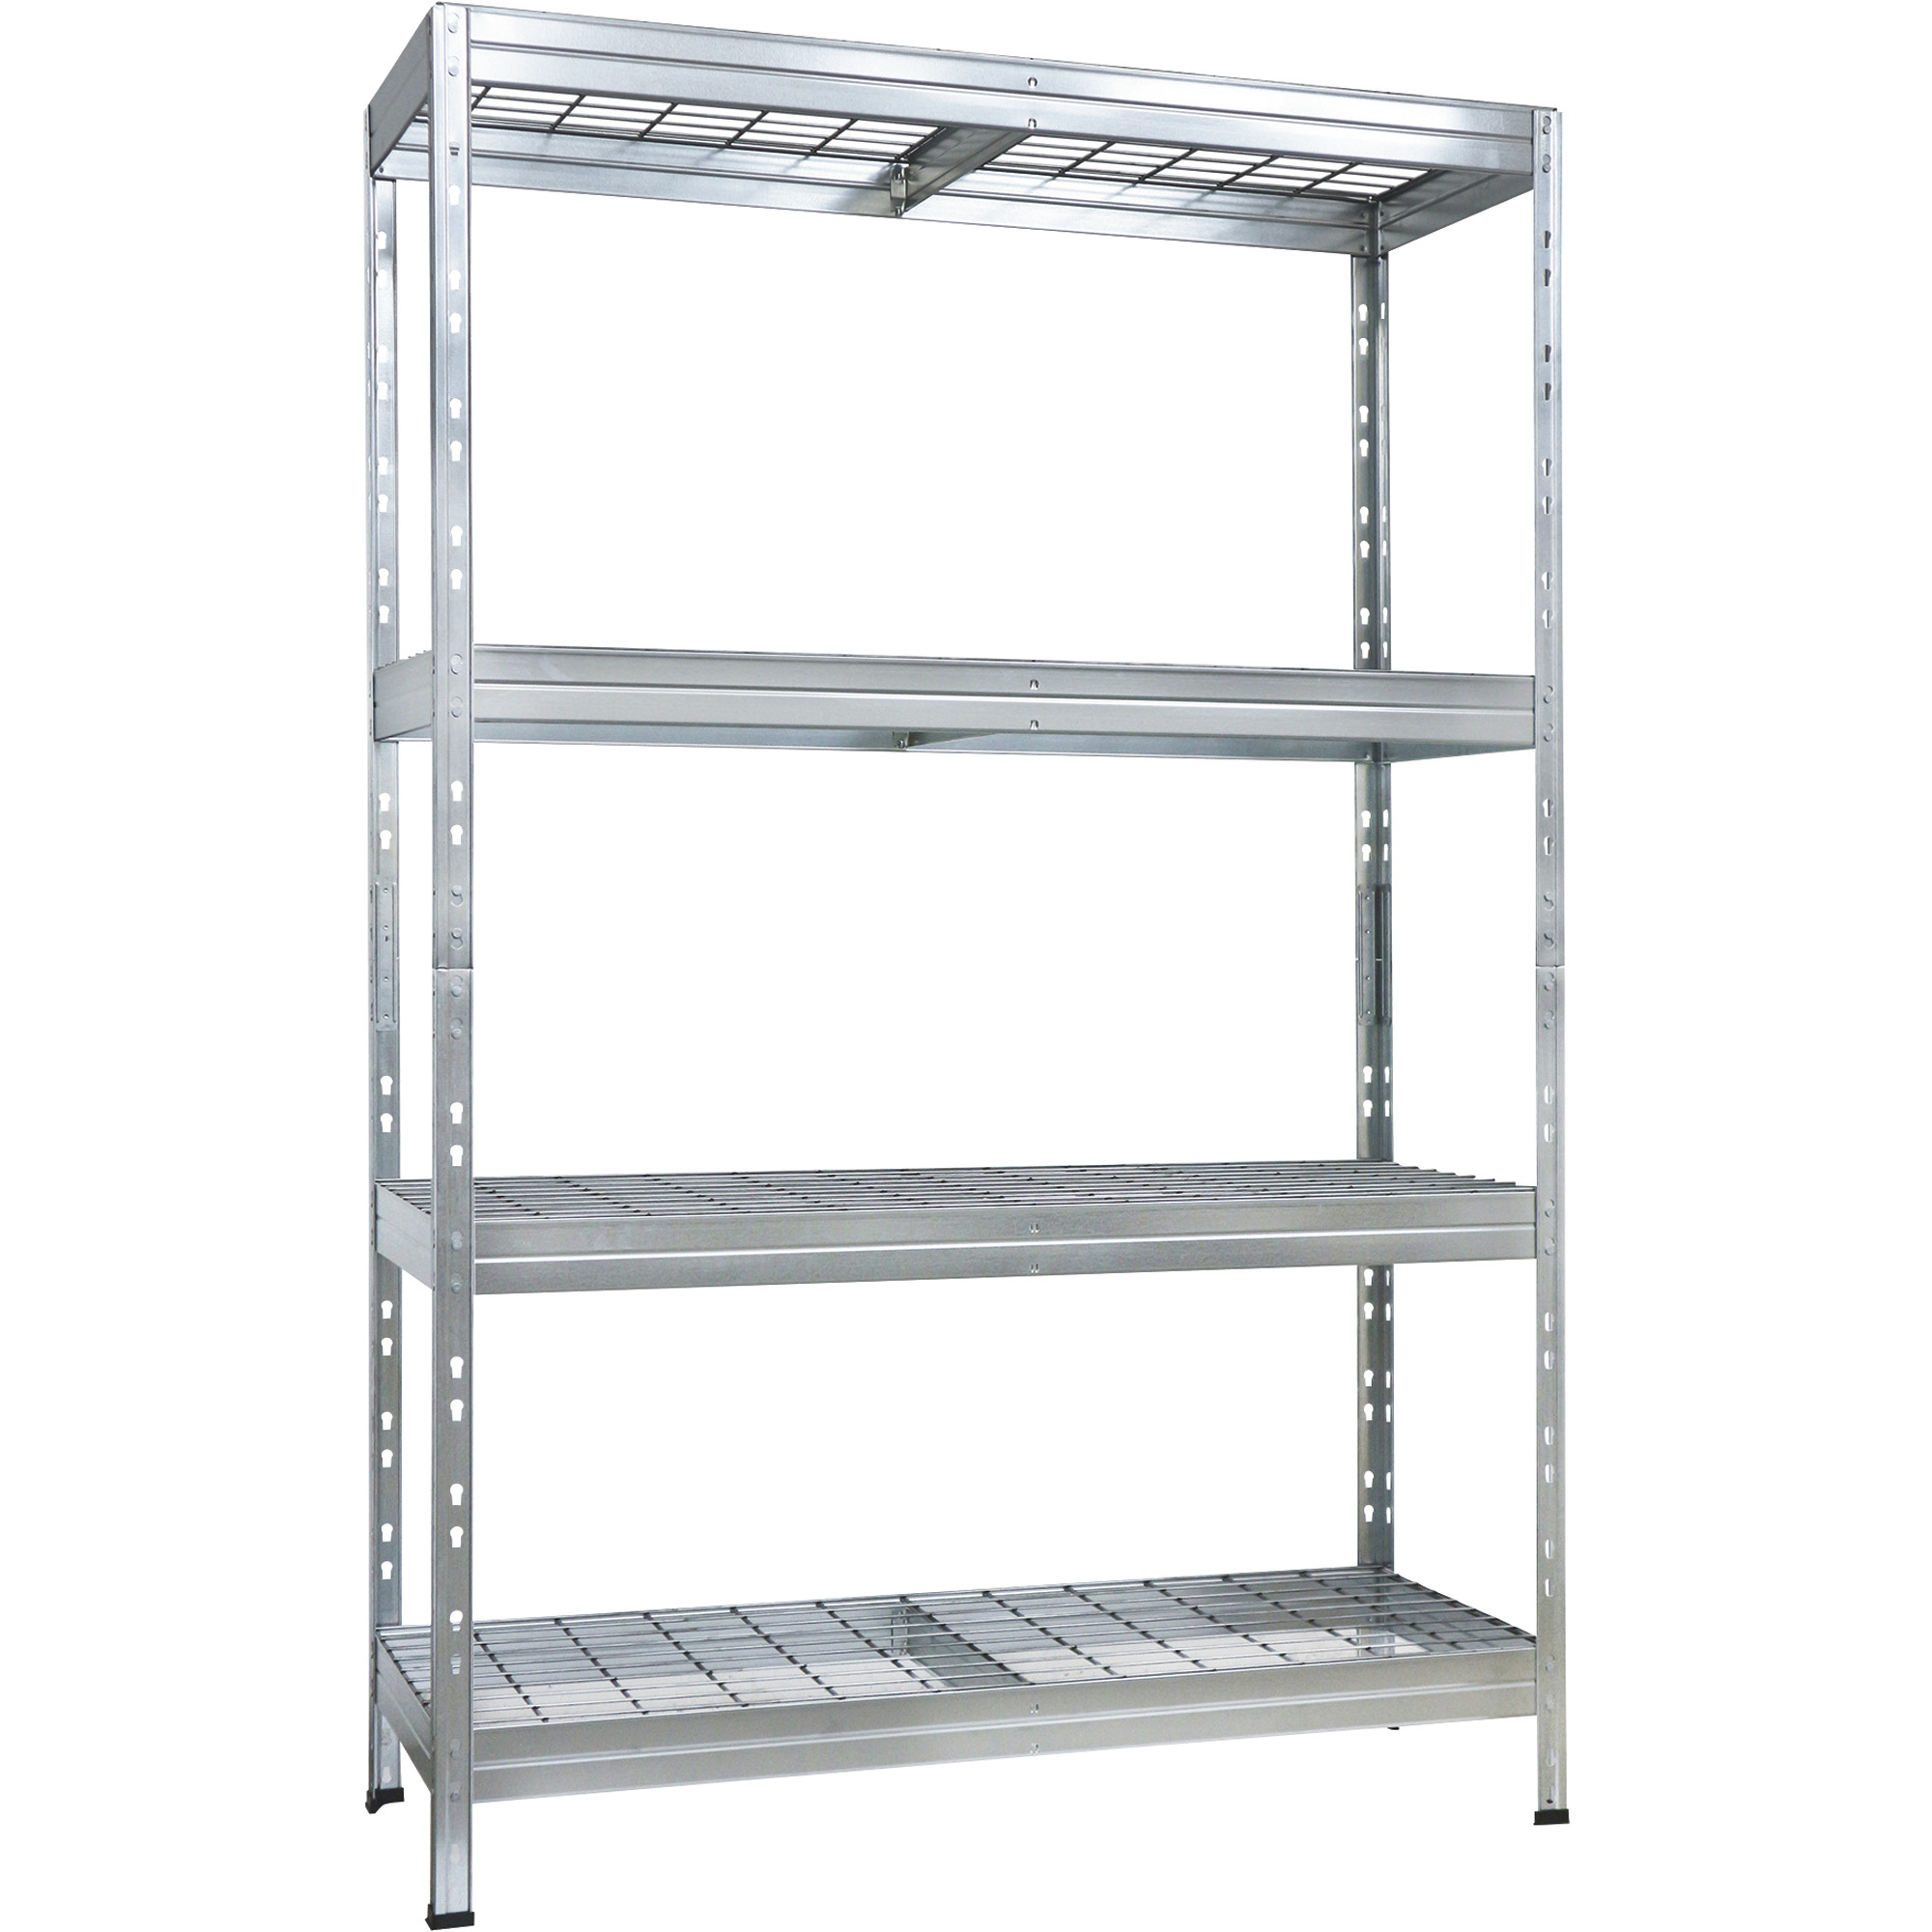 AR Shelving Galvanized Wire Deck Shelving â 4 Shelves, 660-Lb. Capacity Per Shelf, 48Inch W x 18Inch D x 71Inch H, Model WIRE 120/45